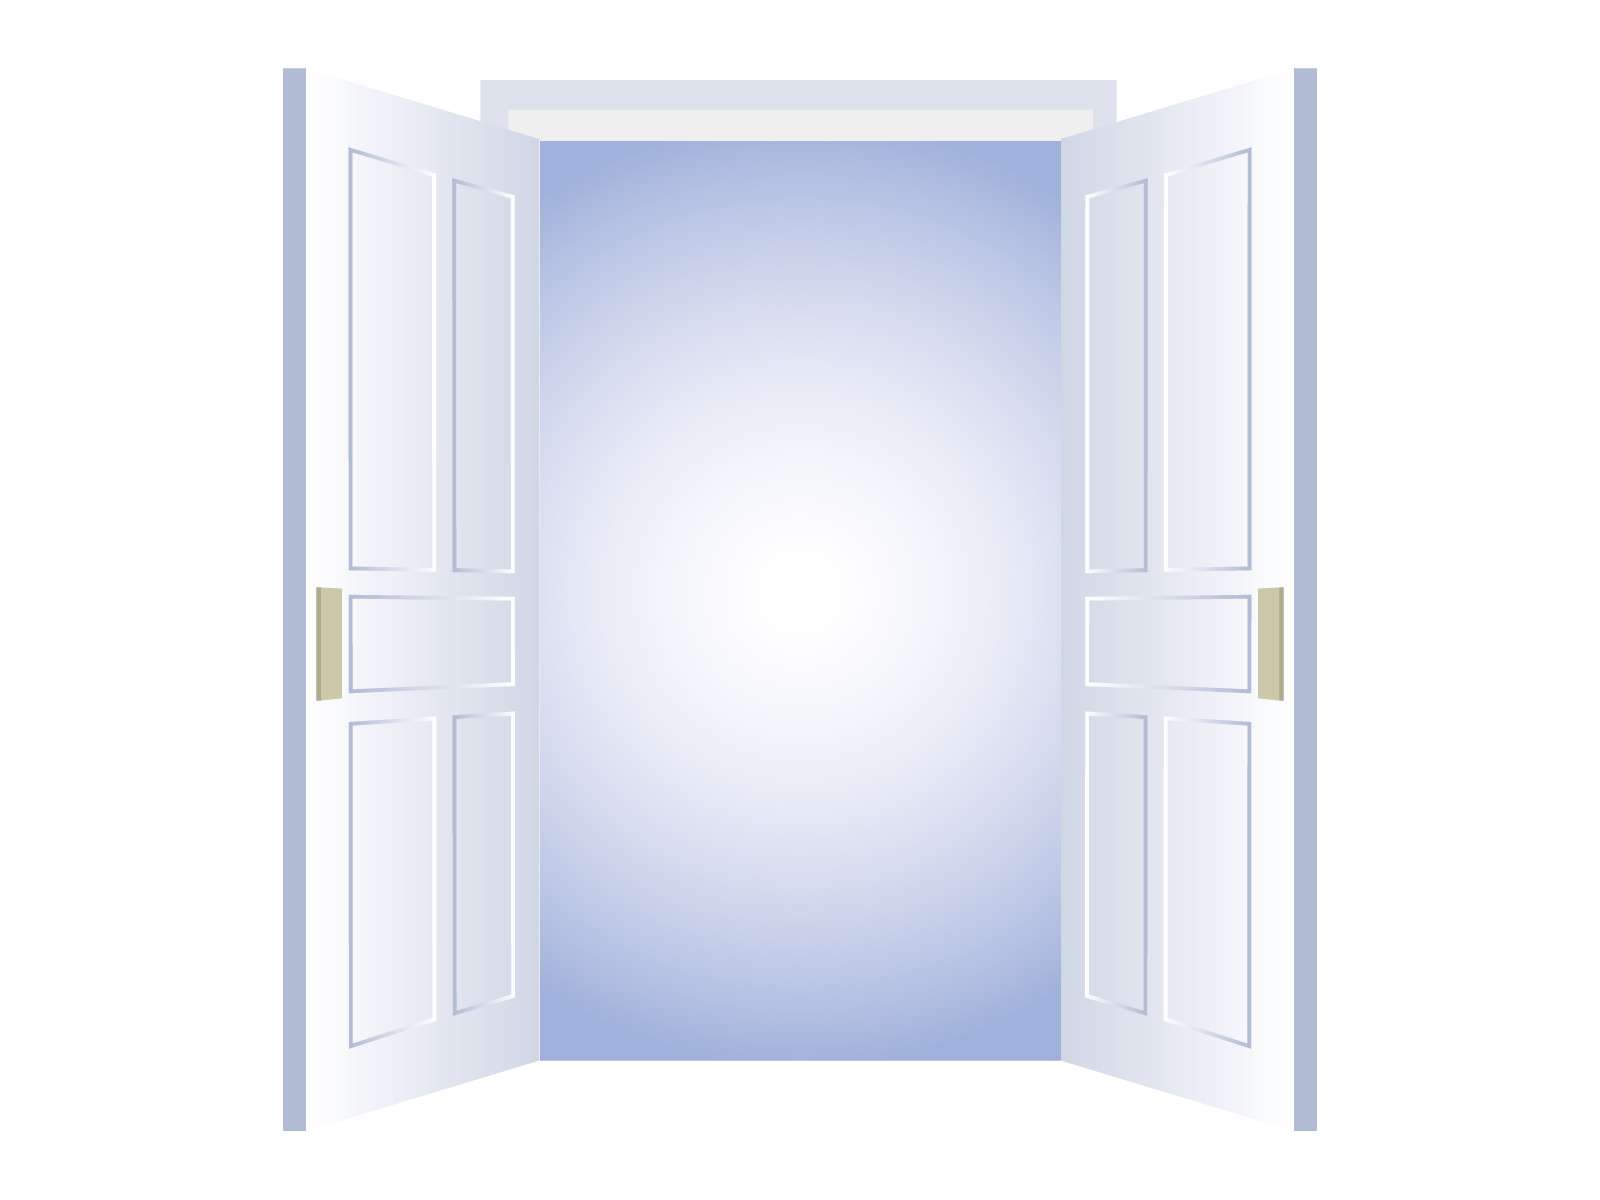 両開きの白い扉が大きく開かれ、その先に白い光が見えているイラストです